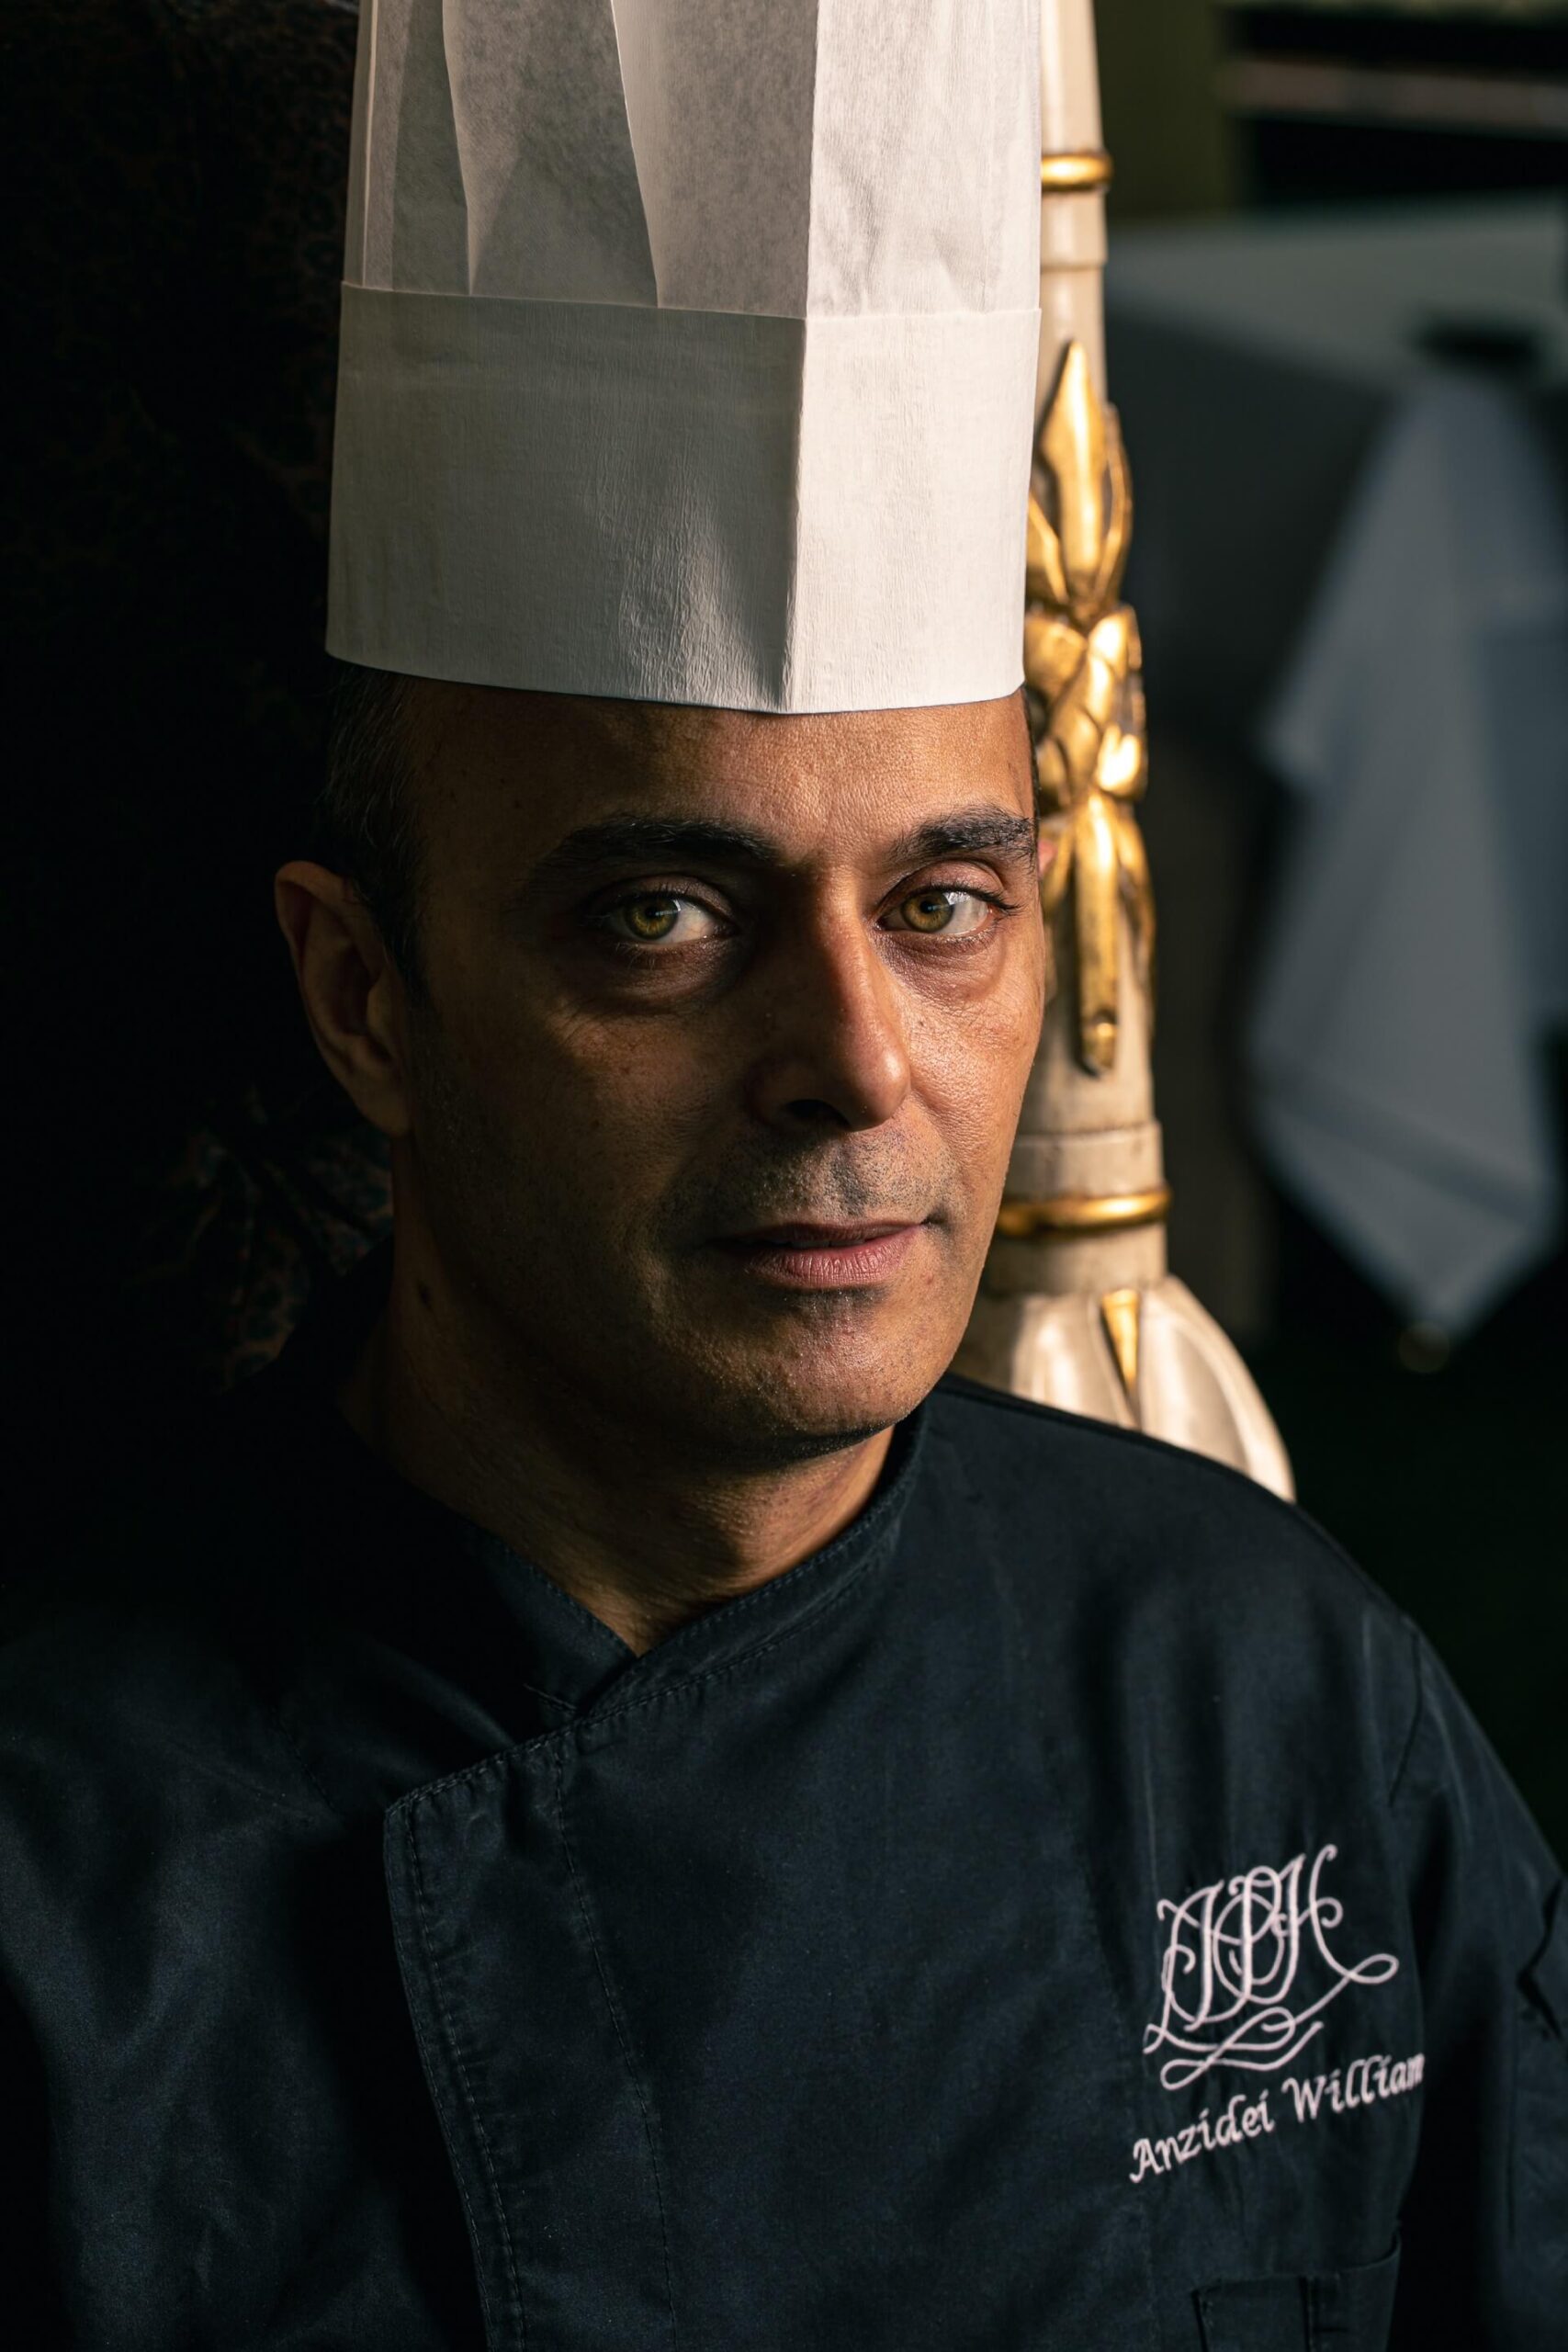 Chef William Anzidei